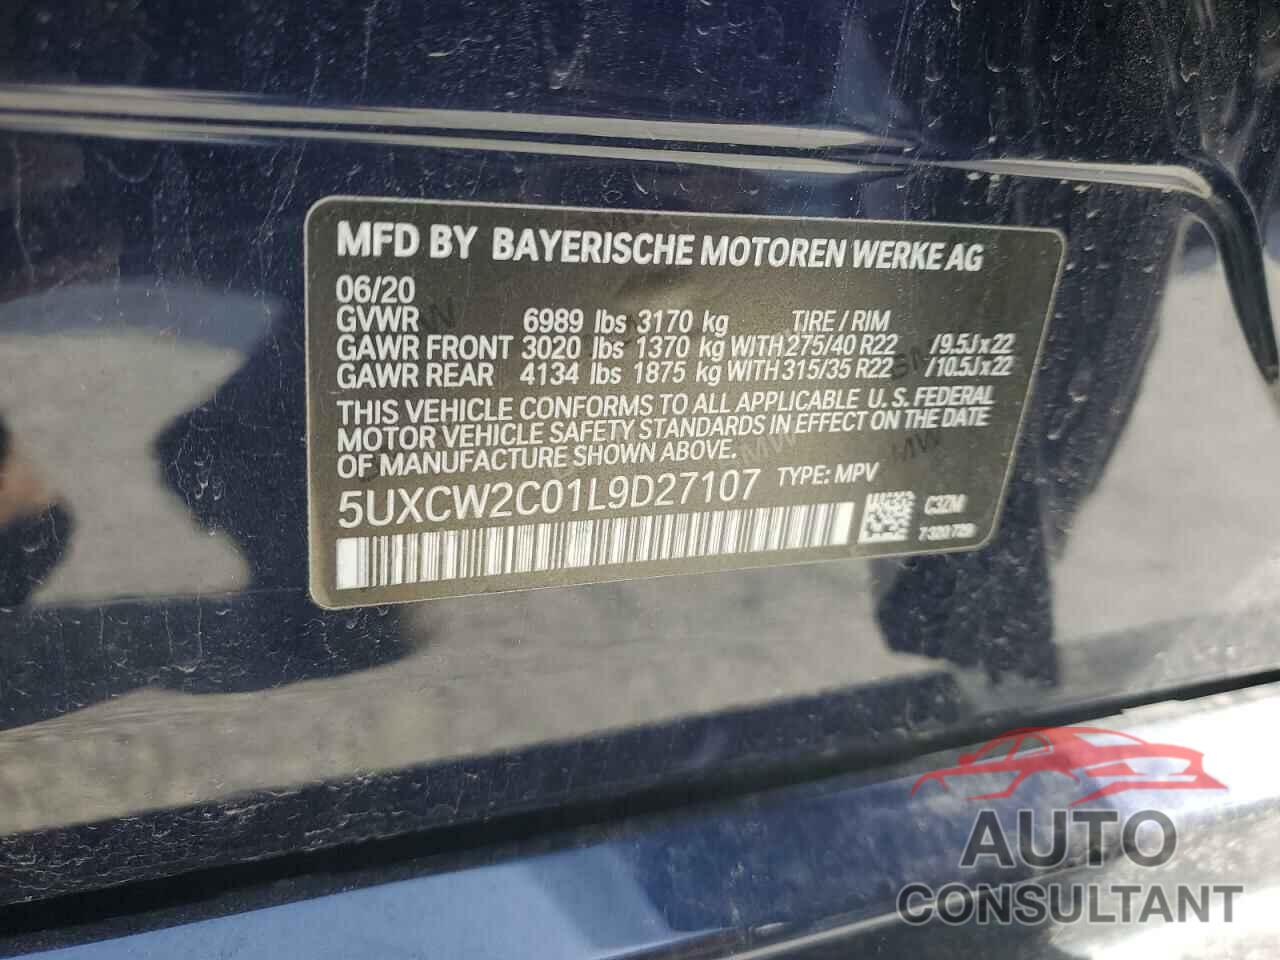 BMW X7 2020 - 5UXCW2C01L9D27107